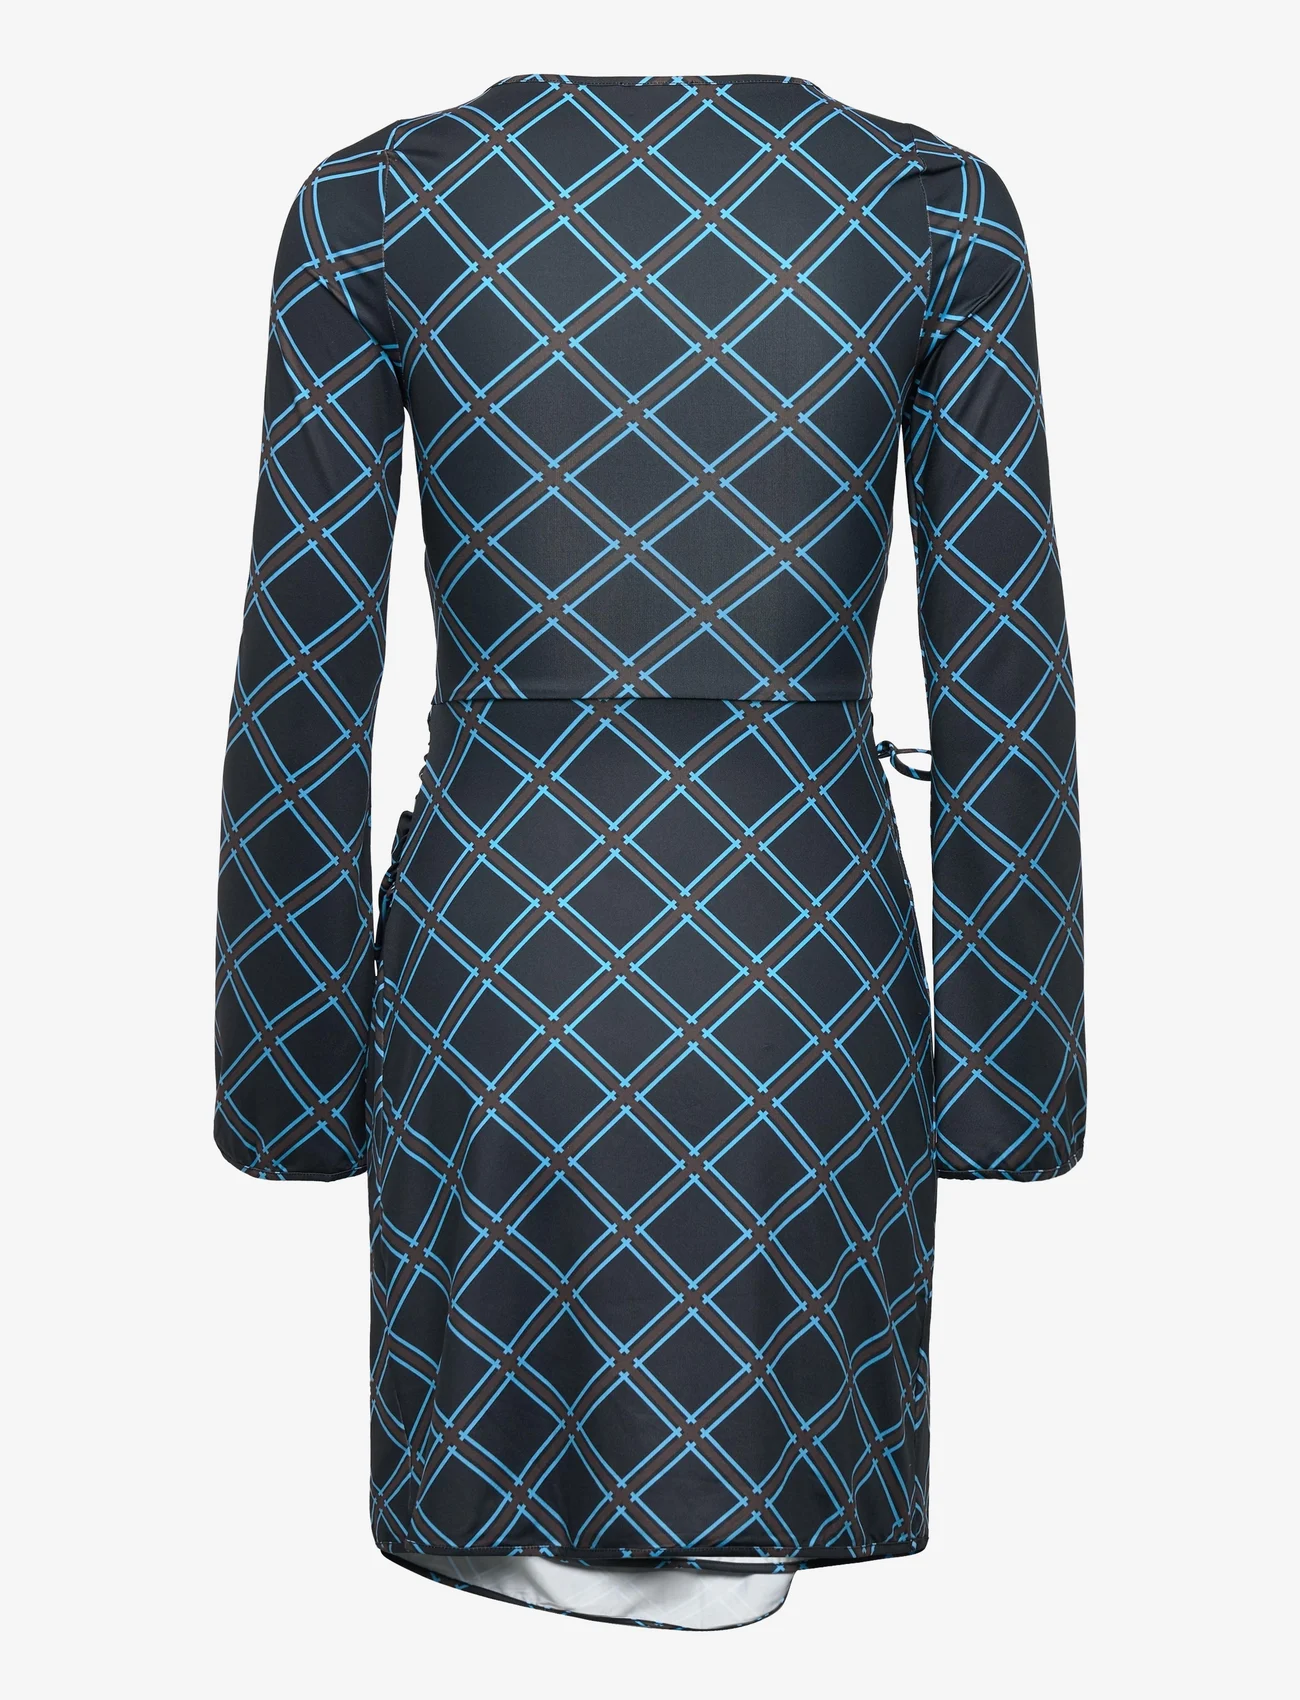 Barbara Kristoffersen by Rosemunde - Dress - festtøj til outletpriser - black check print - 1